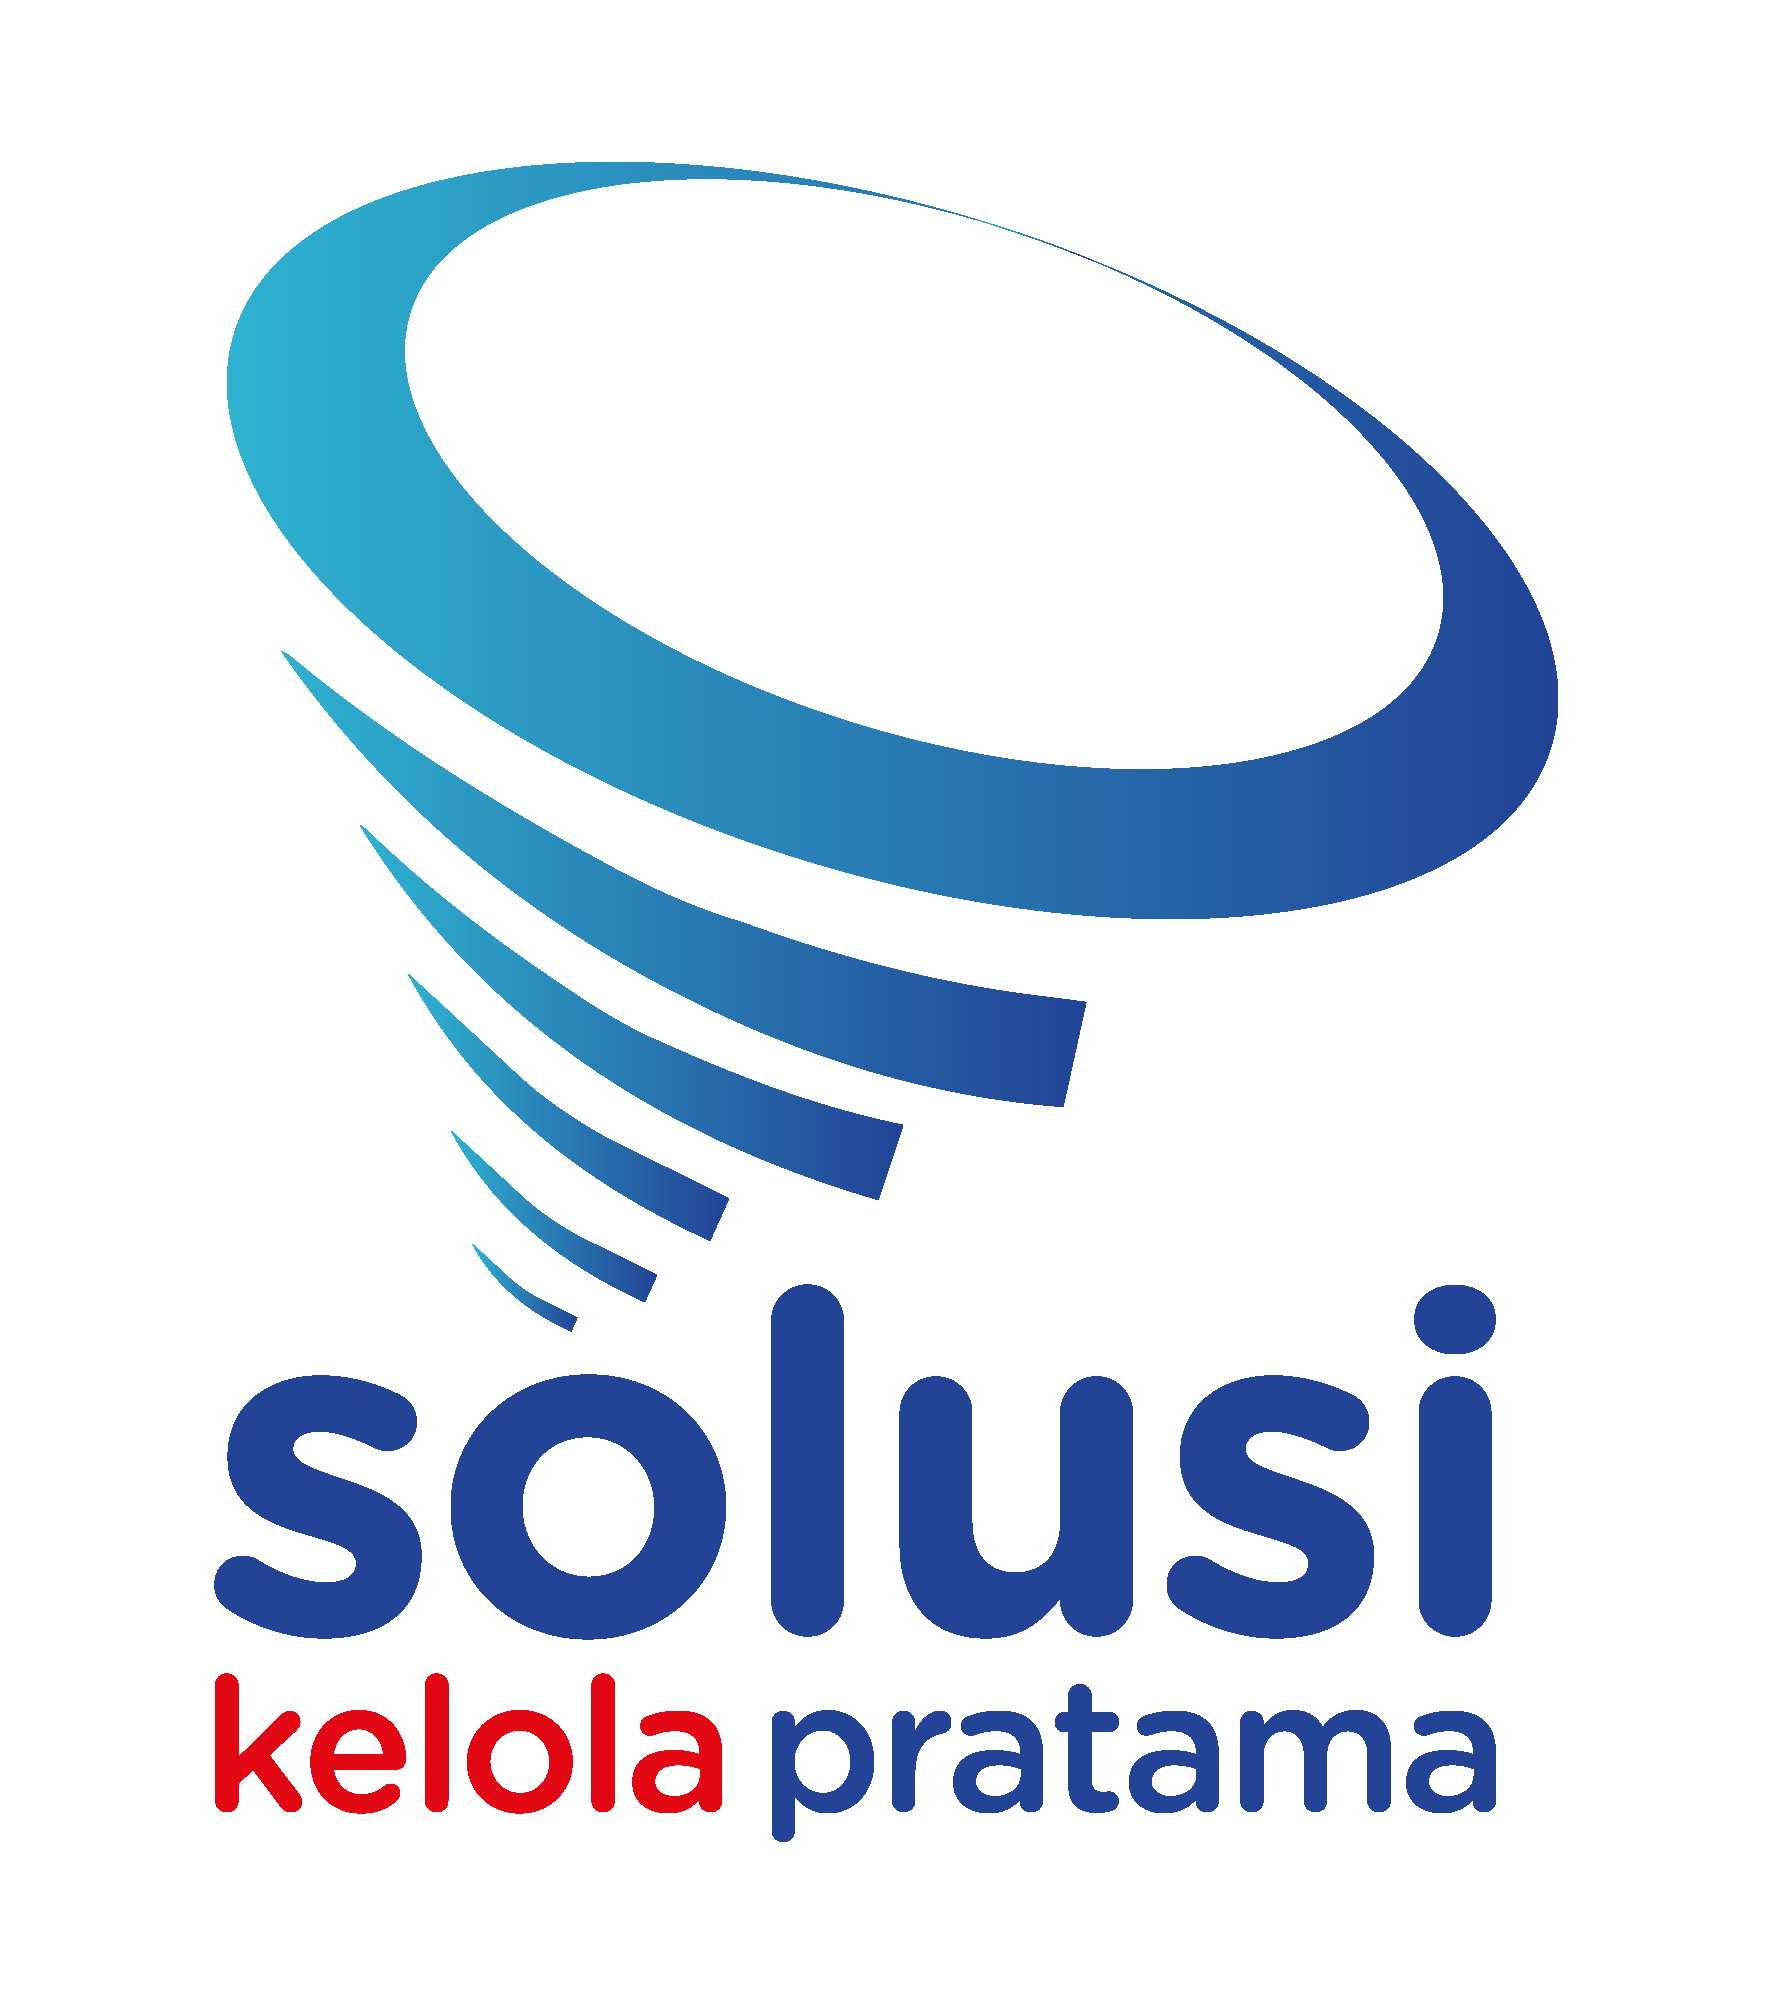 Lowongan Kerja Kolektor Lapangan Balikpapan di Solusi Kelola Pratama, Batu Ampar, Balikpapan Utara, Kota Balikpapan, Kalimantan Timur, Indonesia